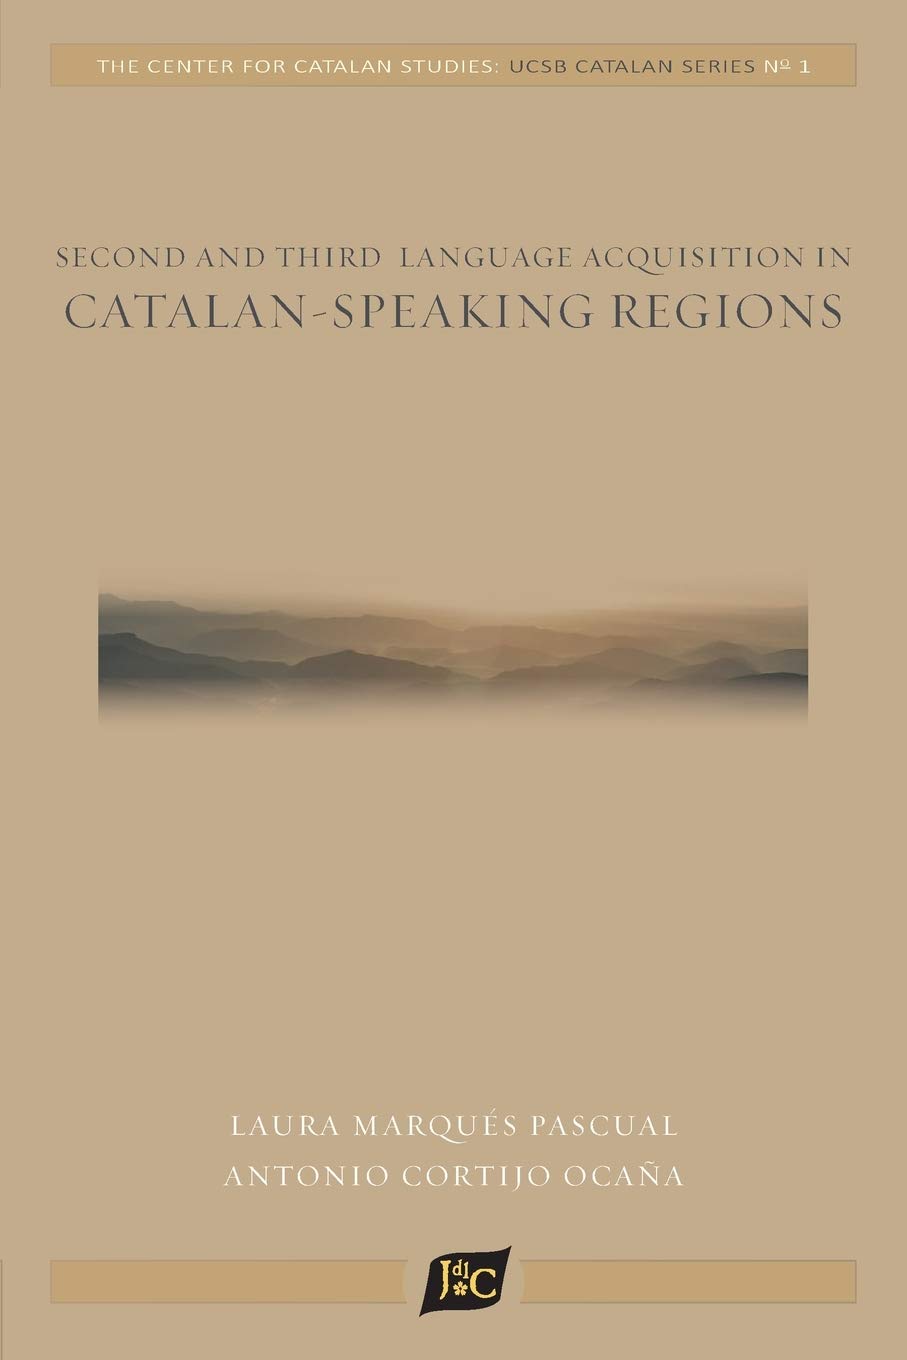 Imagen de portada del libro Second and Third Language Acquisition in Catalan-Speaking Regions (1) (Univ. of California, Santa Barbara Catalan Studies)